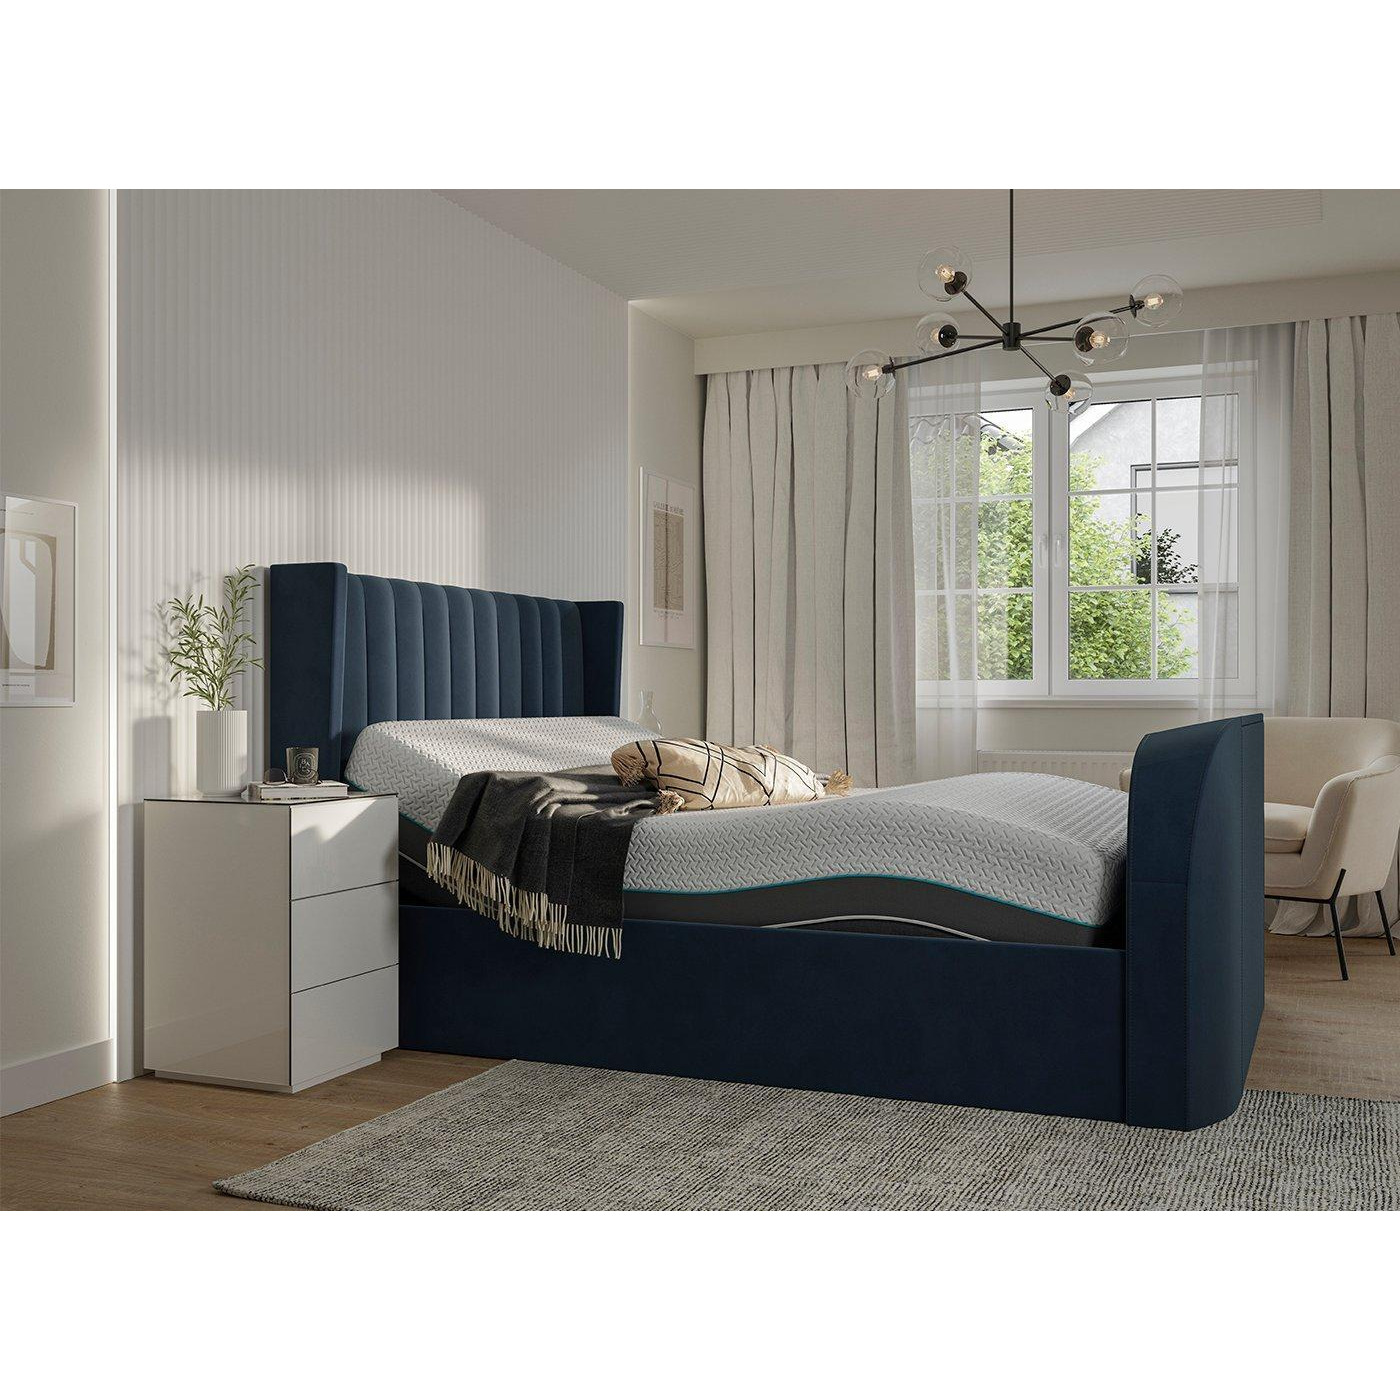 Foley Sleepmotion Adjustable TV Bed Frame - 6'0 Super King - Blue